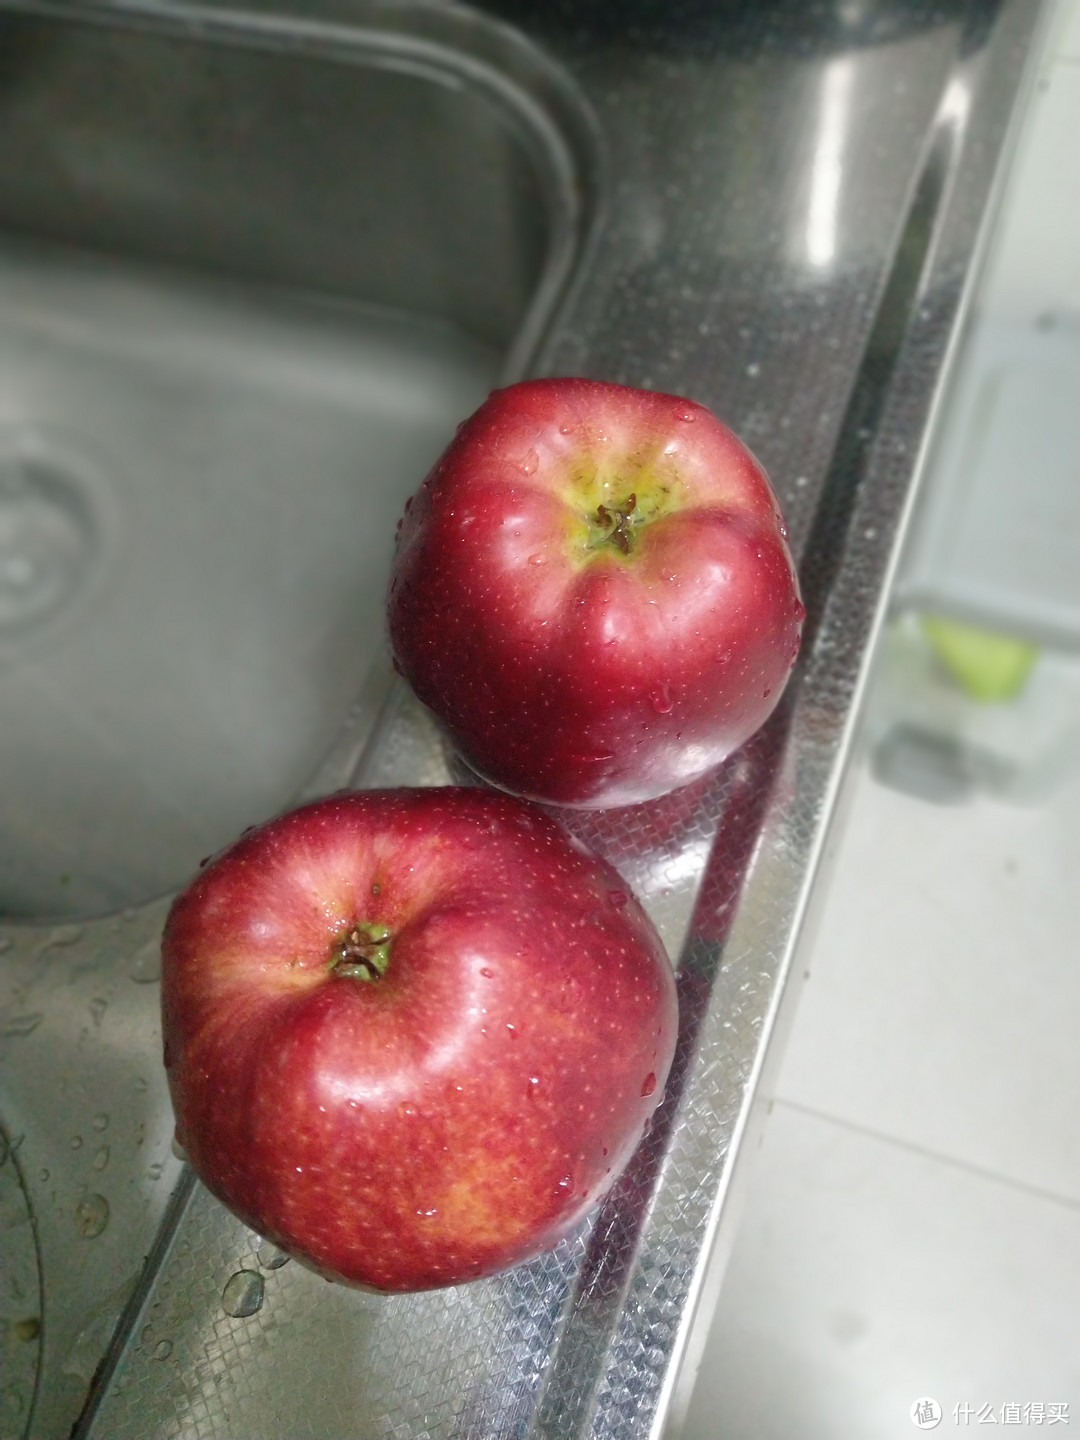 清洗过后的苹果好想吃。。